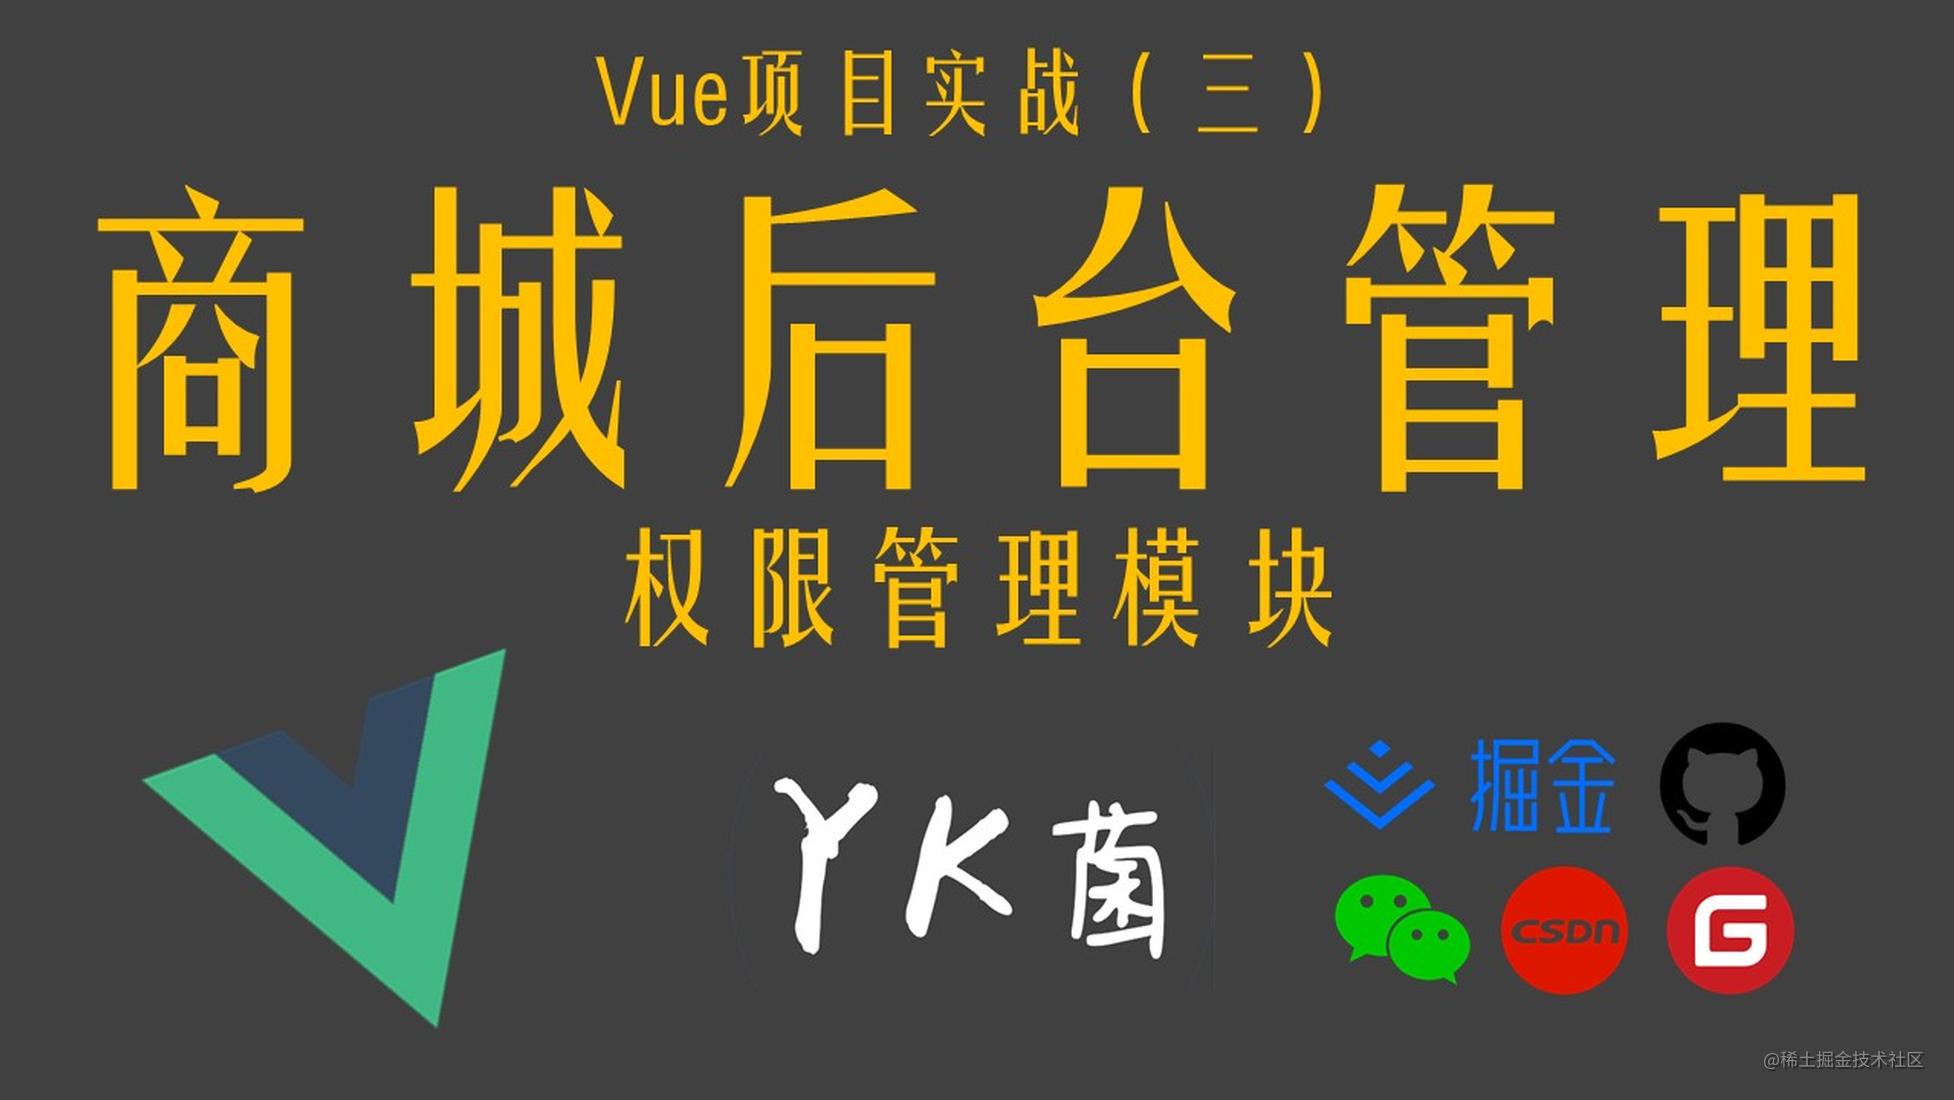 【Vue】实战项目：电商后台管理系统（三）权限管理模块